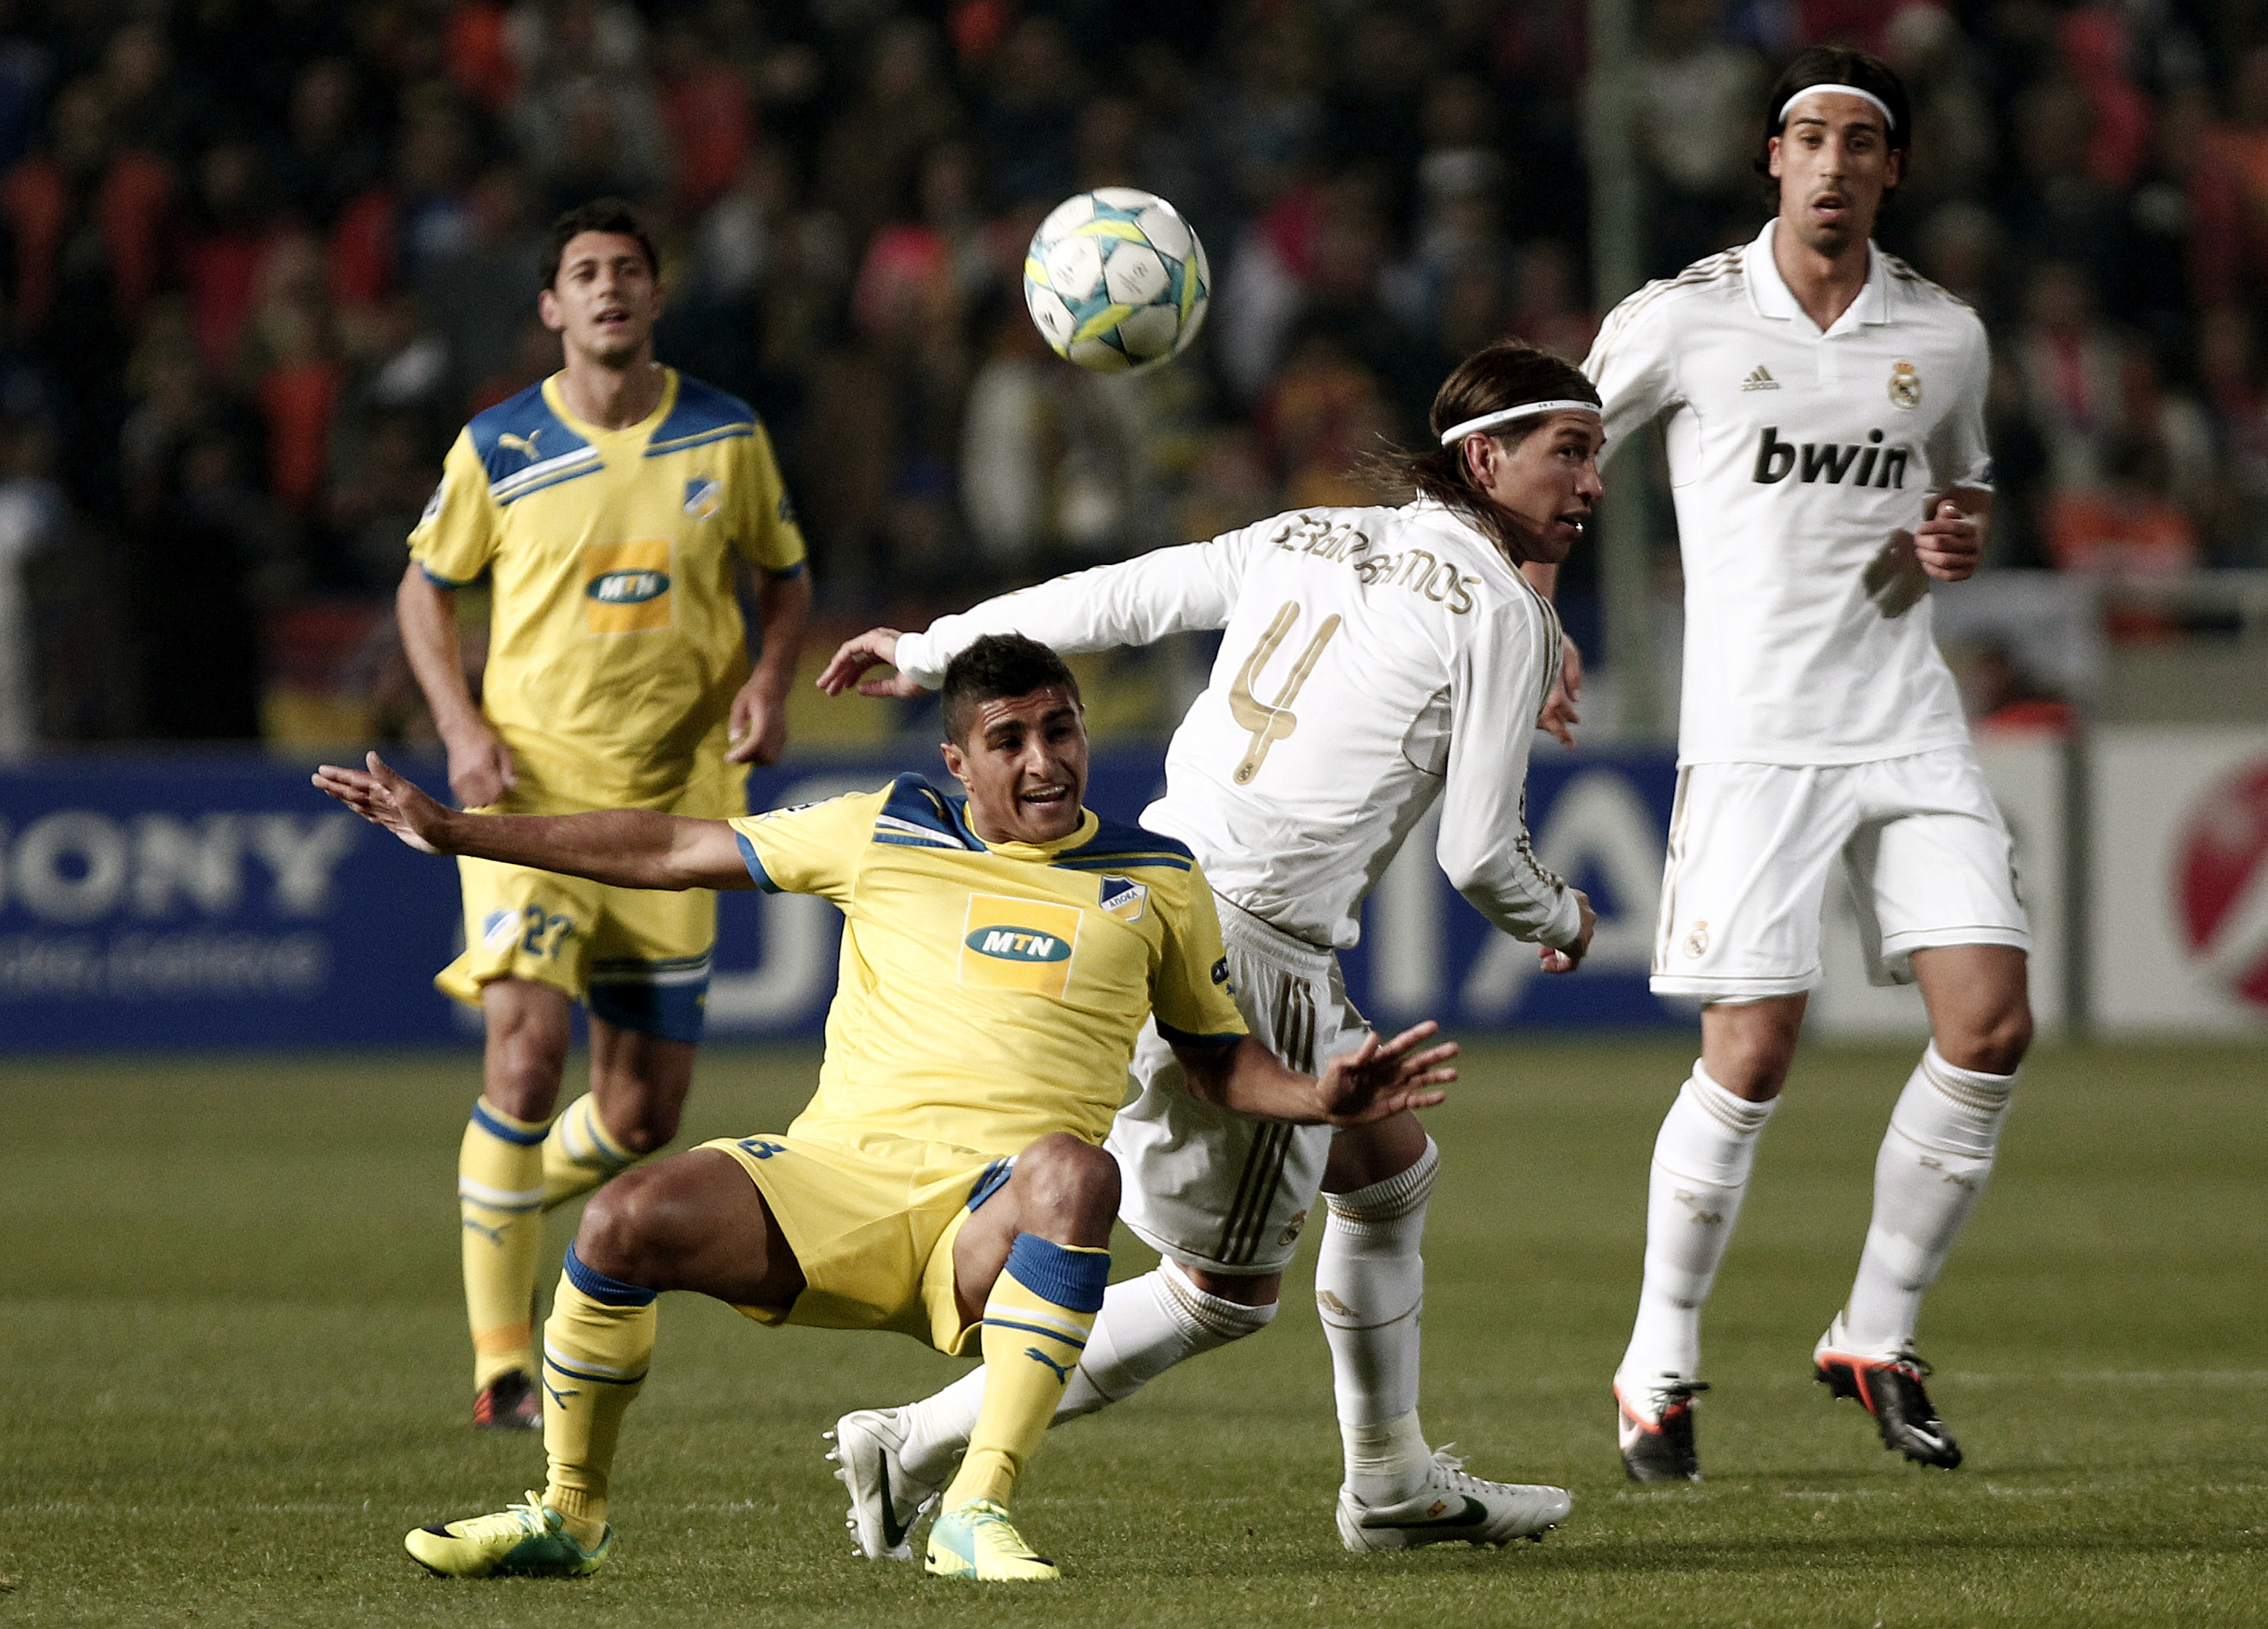 APOEL föll tungt mot Real Madrid med 3–0. Aílton och hans lagkamrater hade inte ett enda skott på mål under hela matchen. Något som bara har hänt en gång tidigare i Champions League den här säsongen.